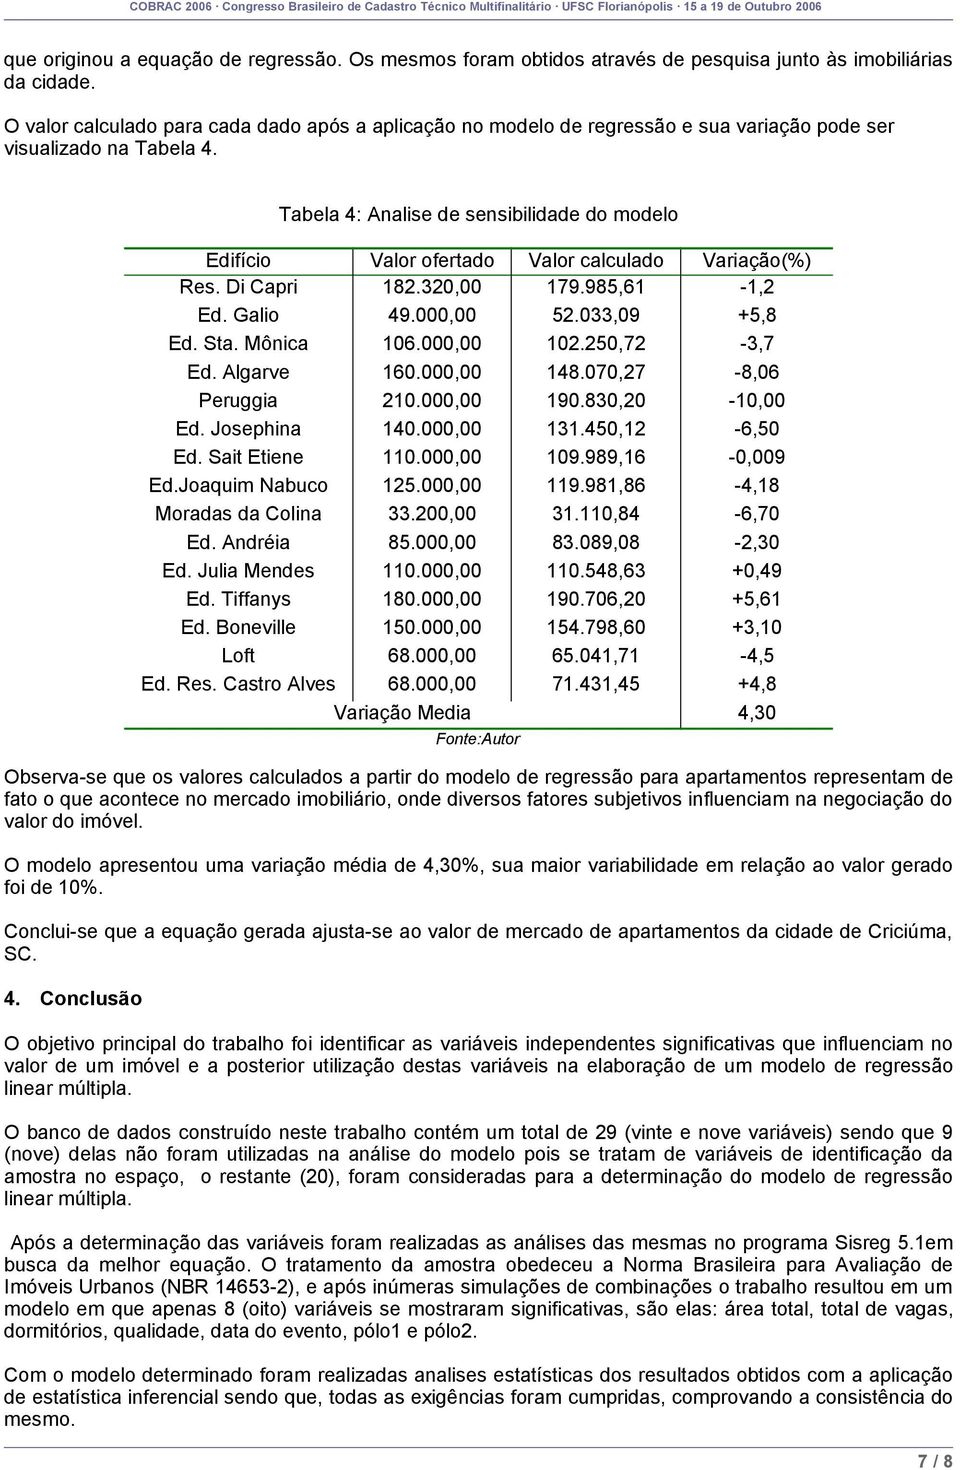 Tabela 4: Analise de sensibilidade do modelo Edifício Valor ofertado Valor calculado Variação(%) Res. Di Capri 182.320,00 179.985,61-1,2 Ed. Galio 49.000,00 52.033,09 +5,8 Ed. Sta. Mônica 106.